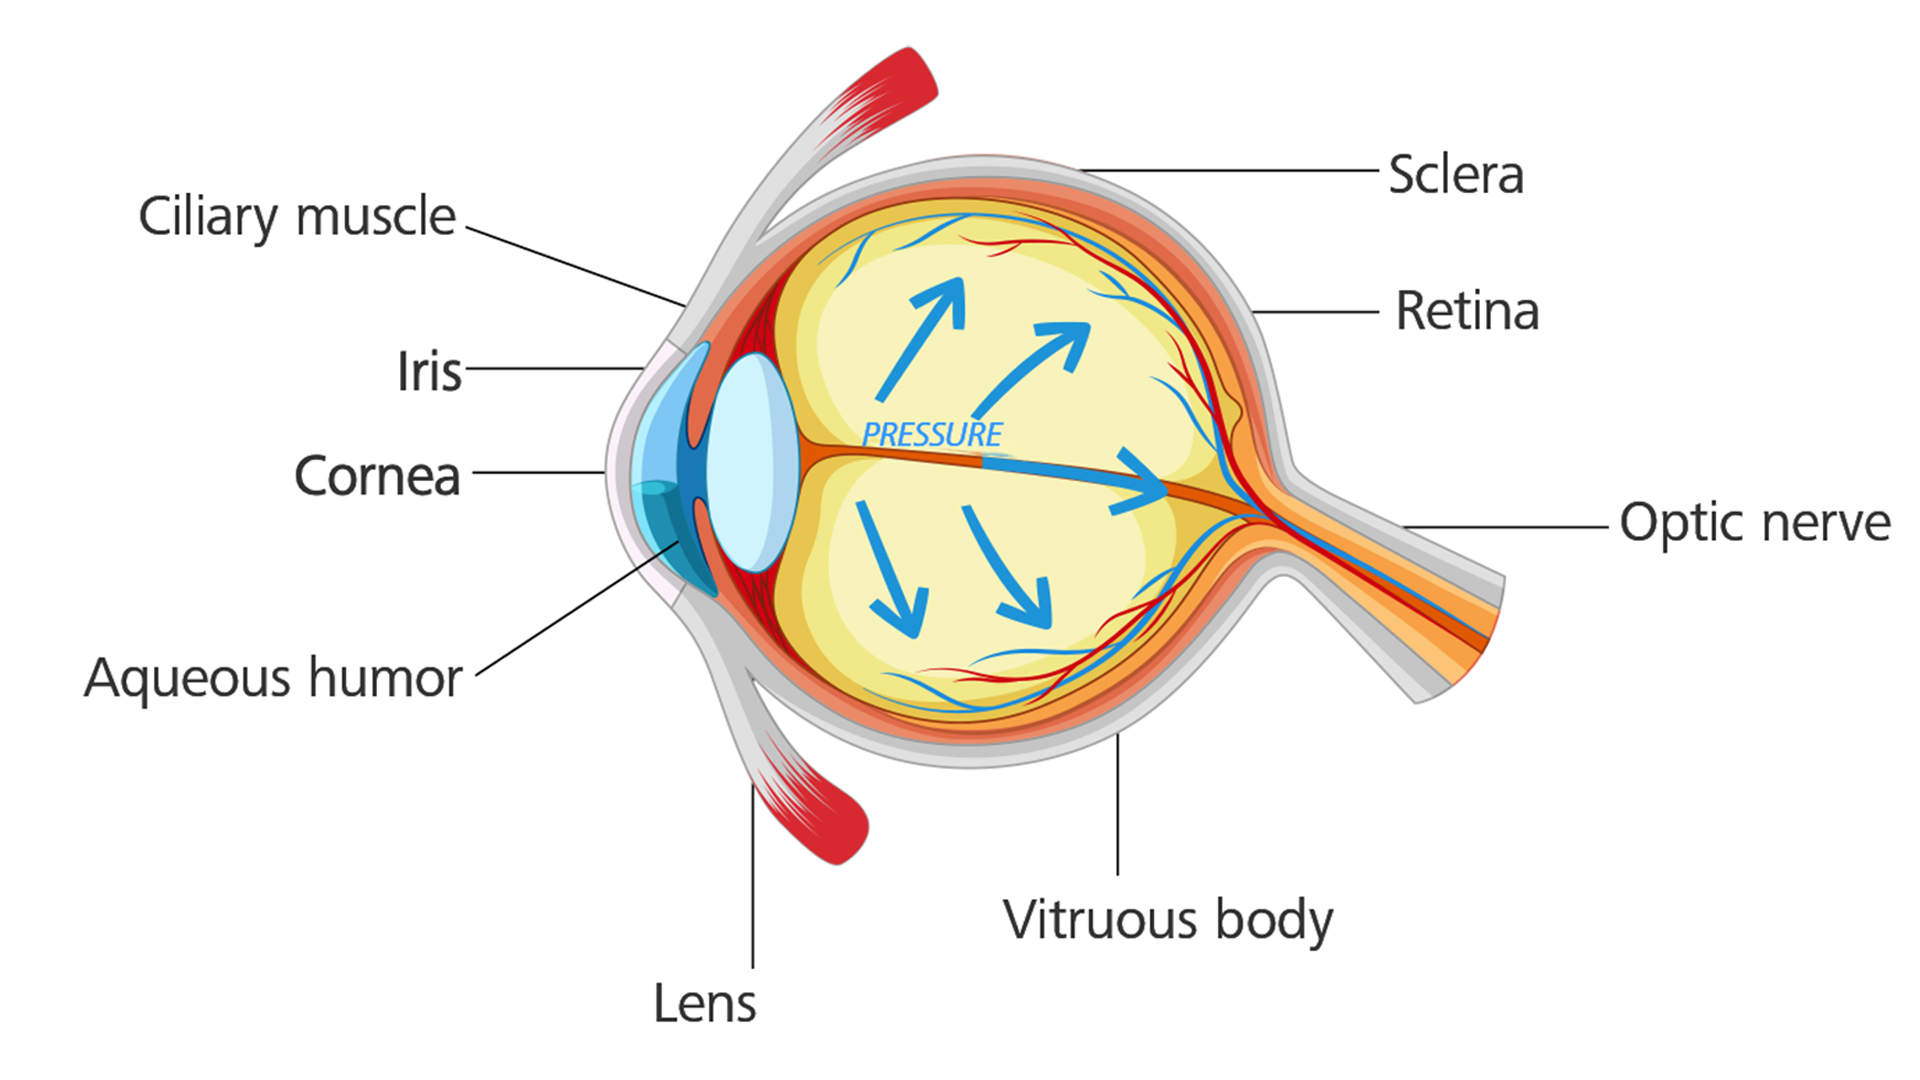 罹患青光眼的眼睛：眼壓上升，造成視神經受損。